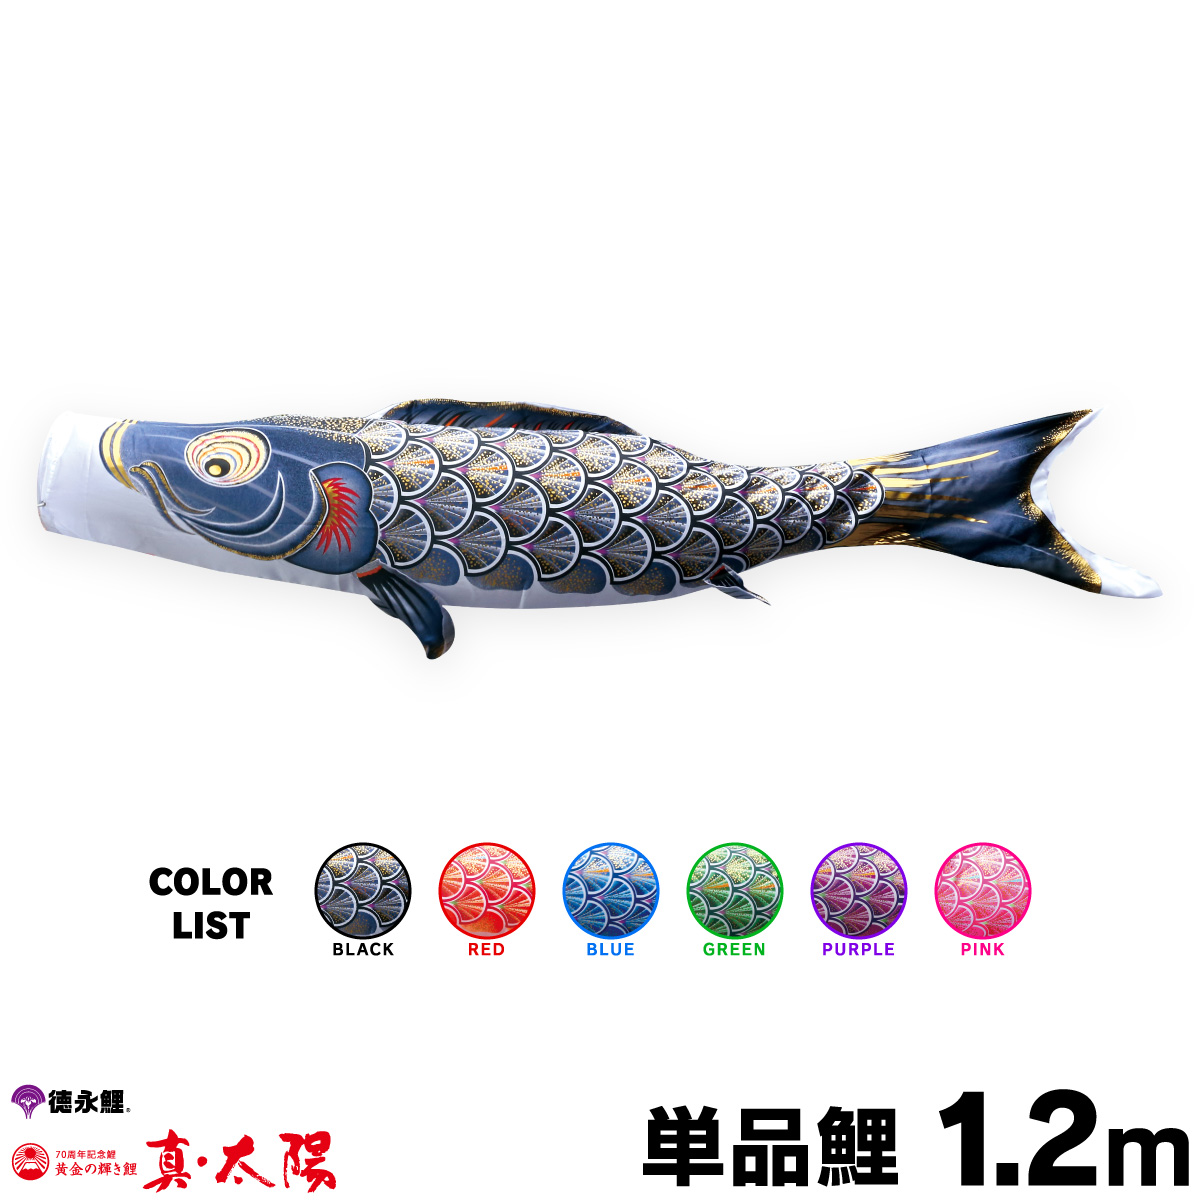 【楽天市場】こいのぼり 単品 鯉のぼり 真・太陽鯉 2m 単品鯉 黒 赤 